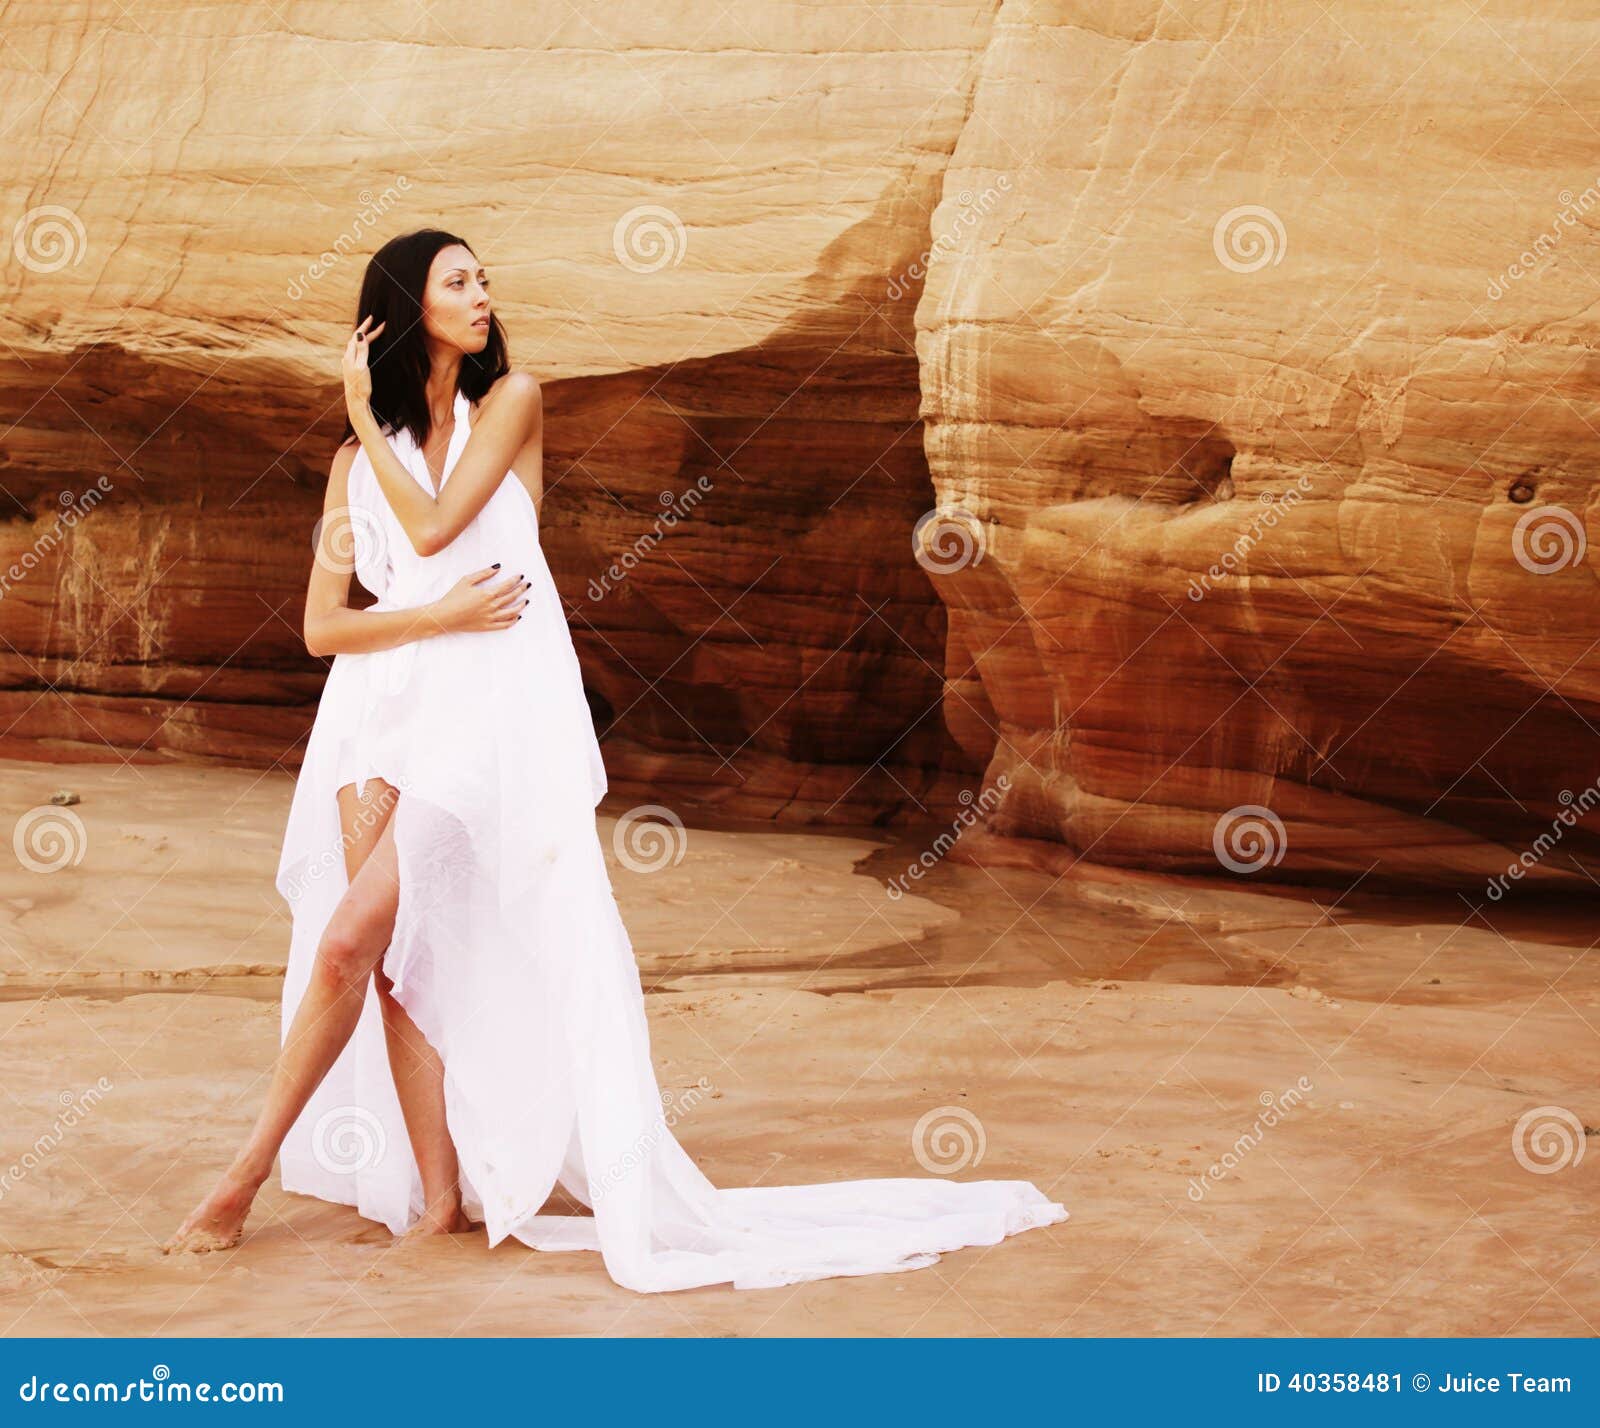 Она танцует в белом платье смотрит тайно. Девушка в белом в пустыне. Девушка в белом платье в пустыне. Девушка в белой одежде в пустыне. Гифка девушка в белом платье в пустыне.